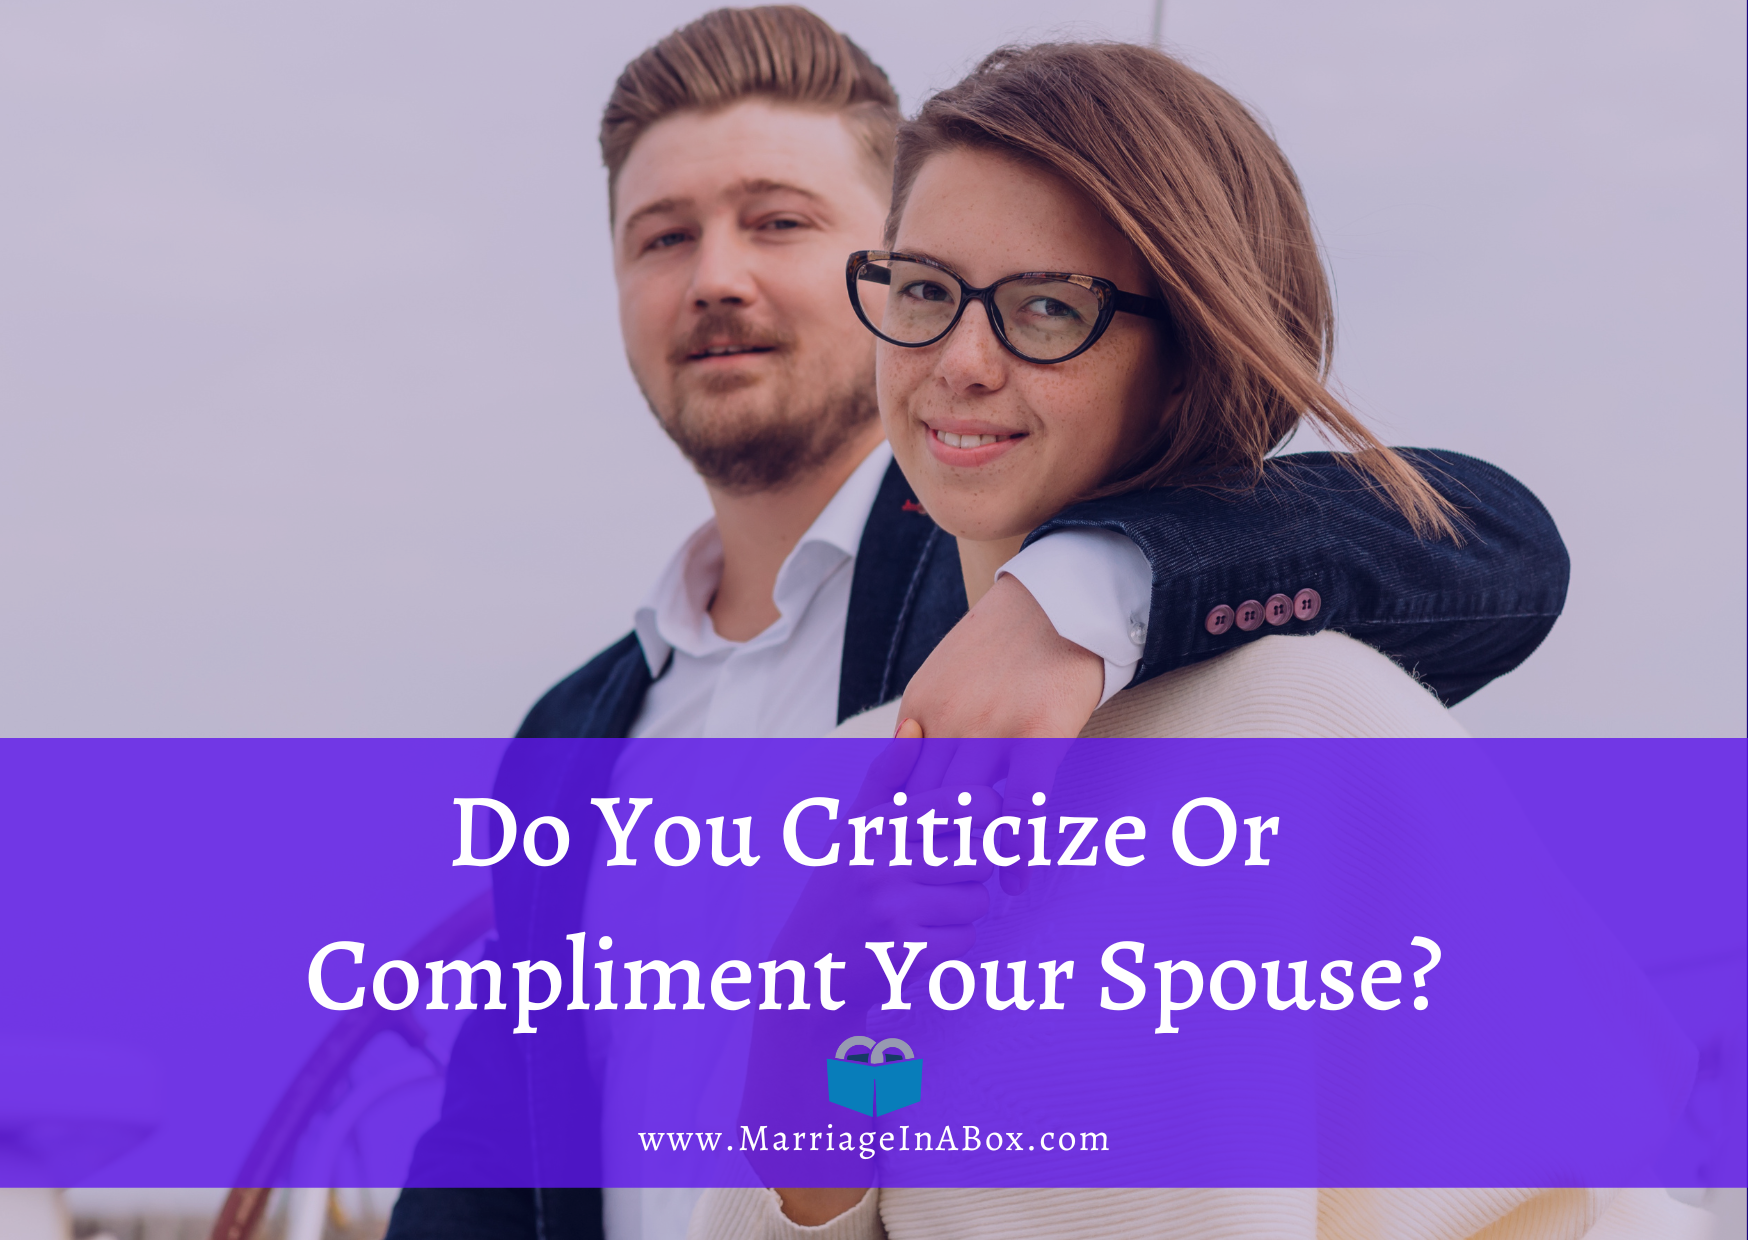 Compliment Your Spouse